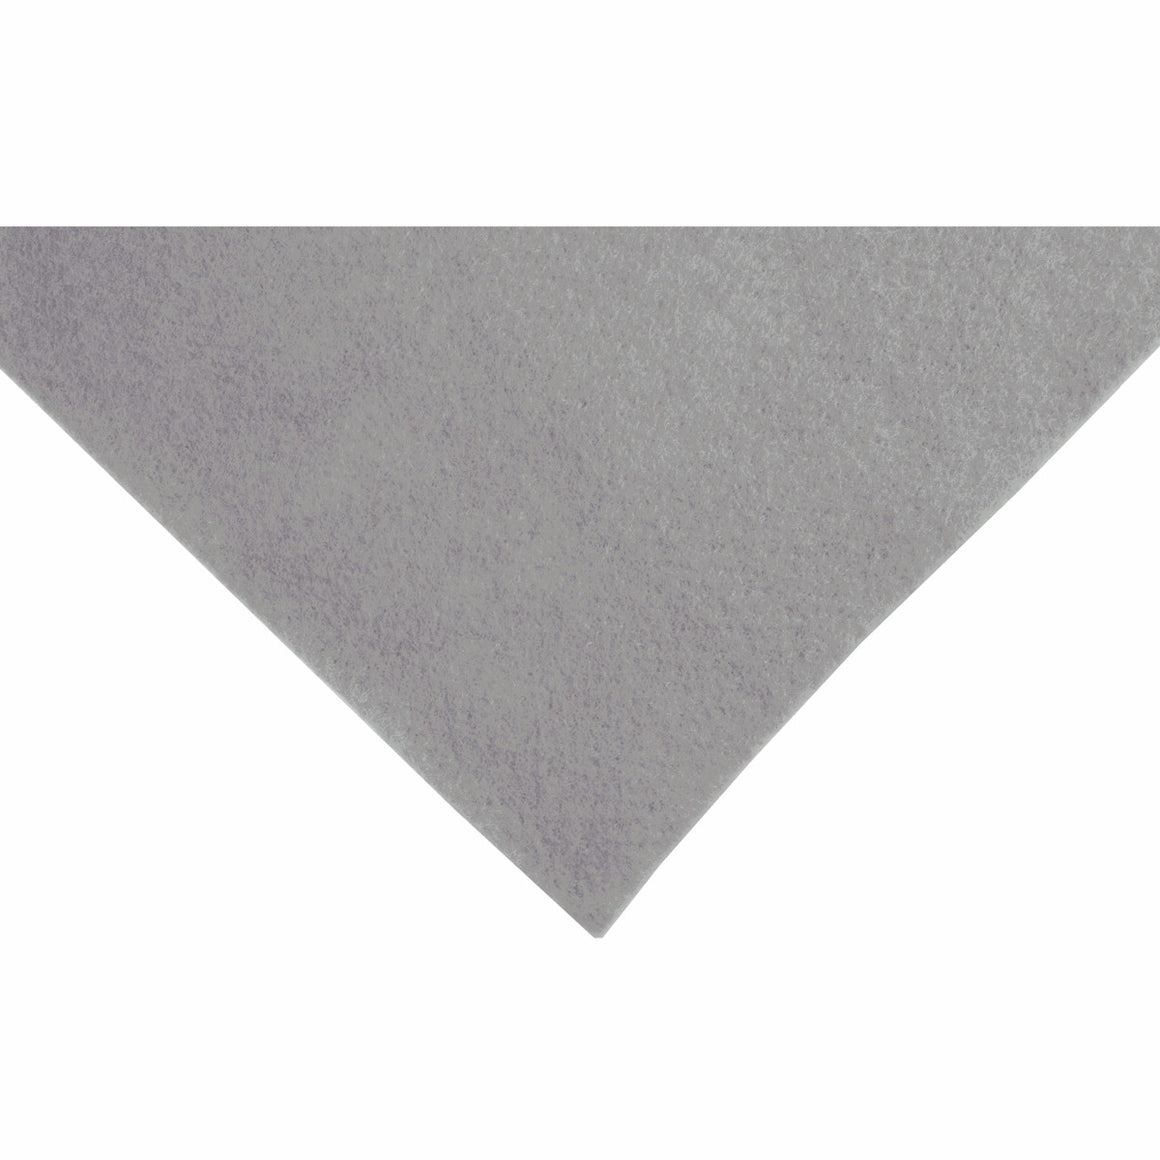 Silver Grey Acrylic Felt - 1 x A4 sheet (23cm x 30cm | 9 x 12 inches)